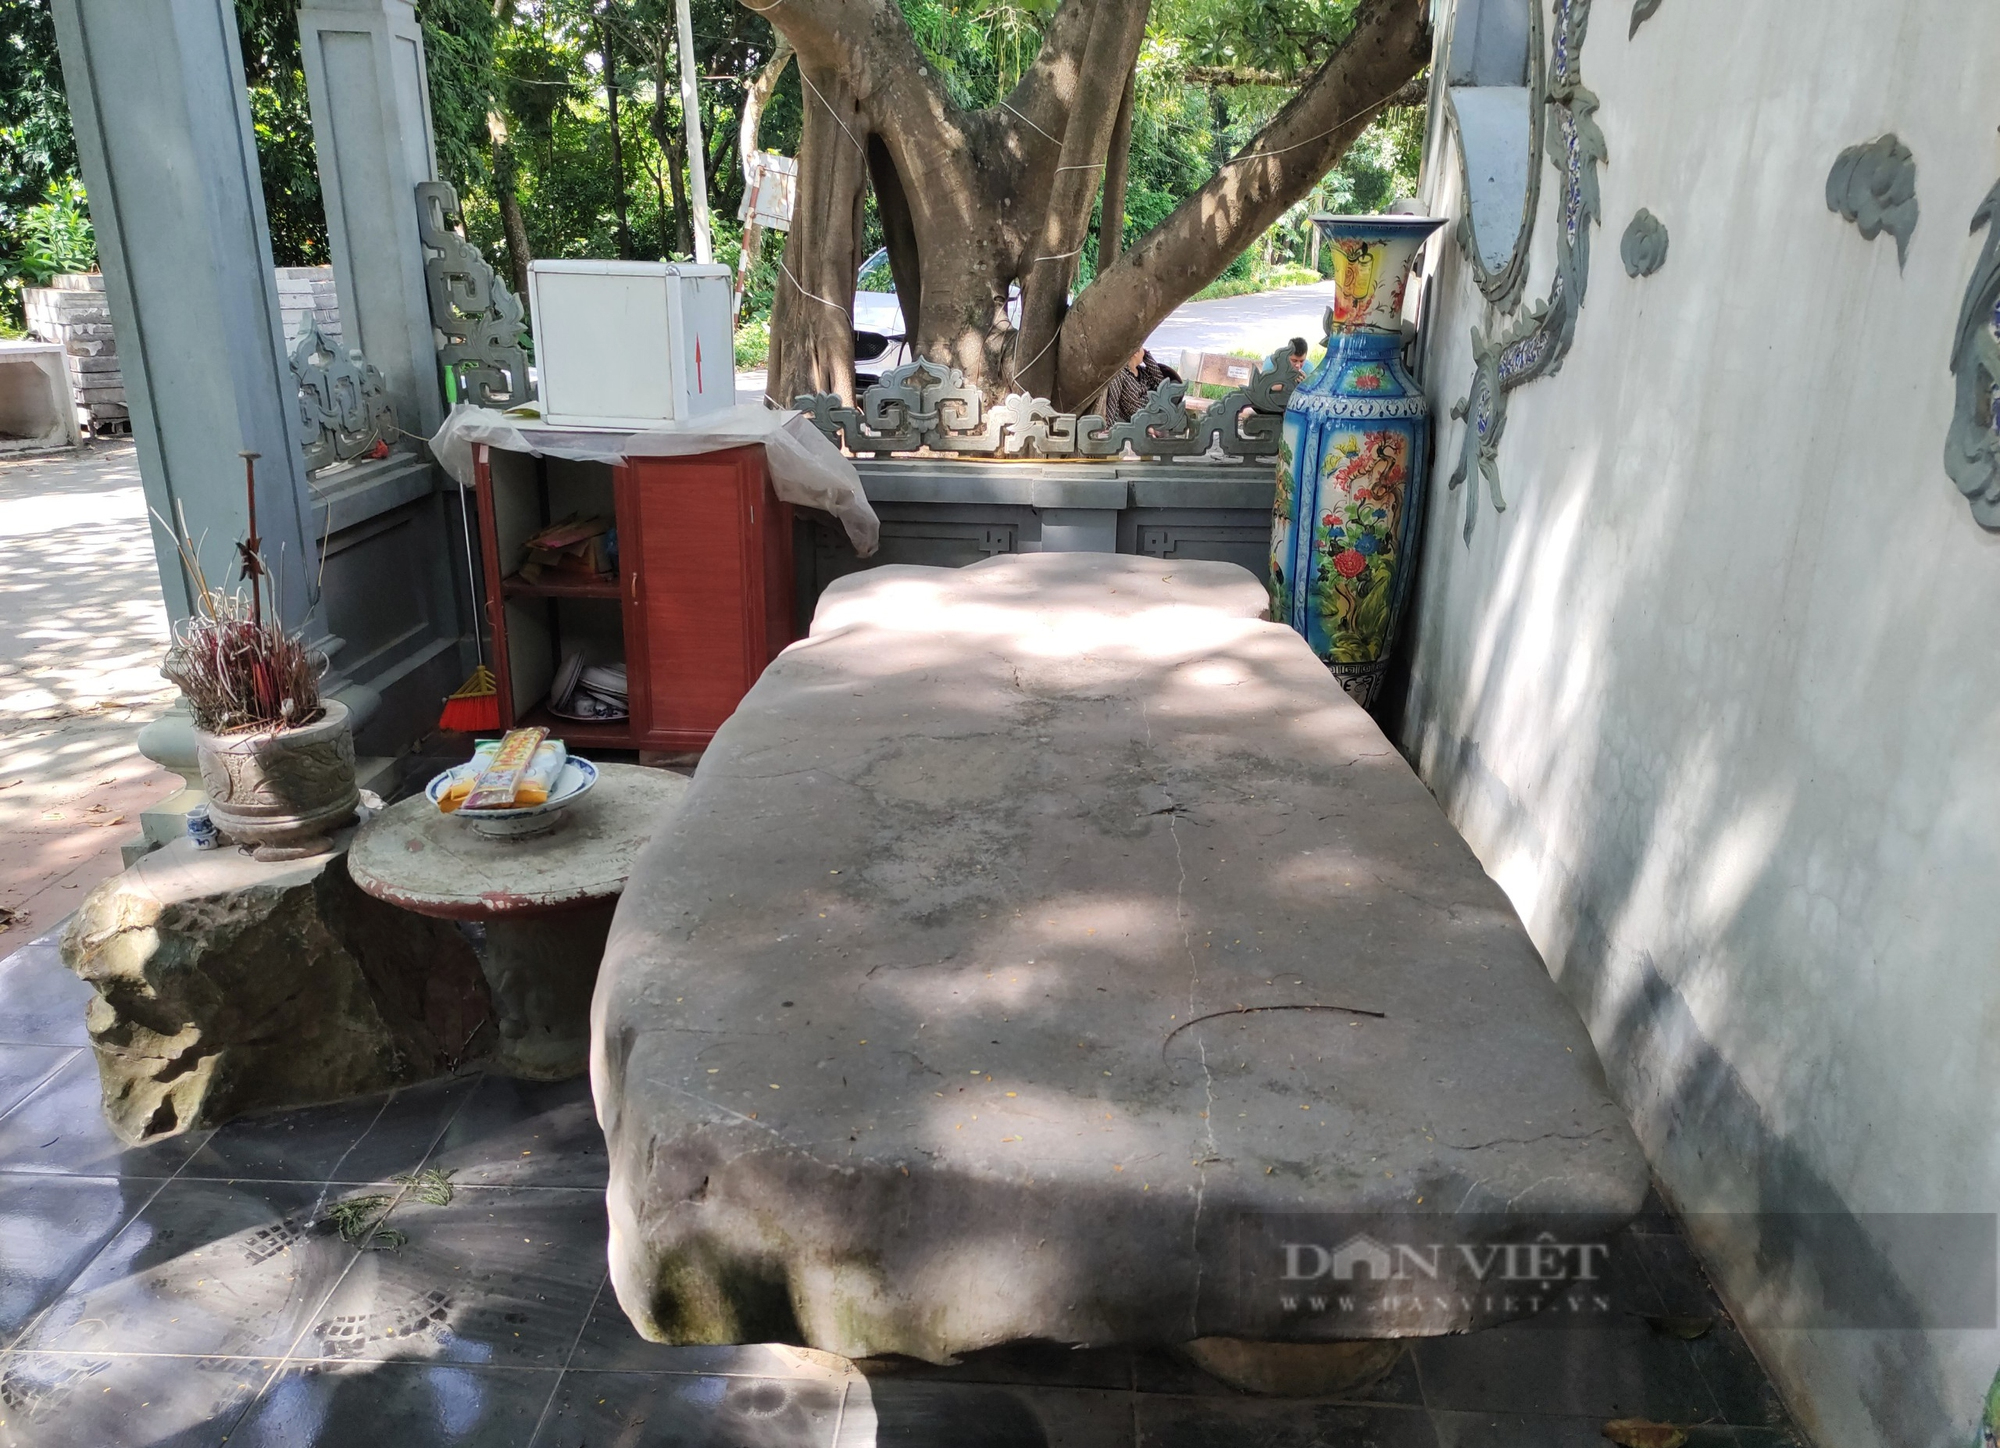 Chuyện lạ ở Hà Nội: Cả làng coi phiến đá như một linh vật, xây miếu lập bàn thờ  - Ảnh 2.